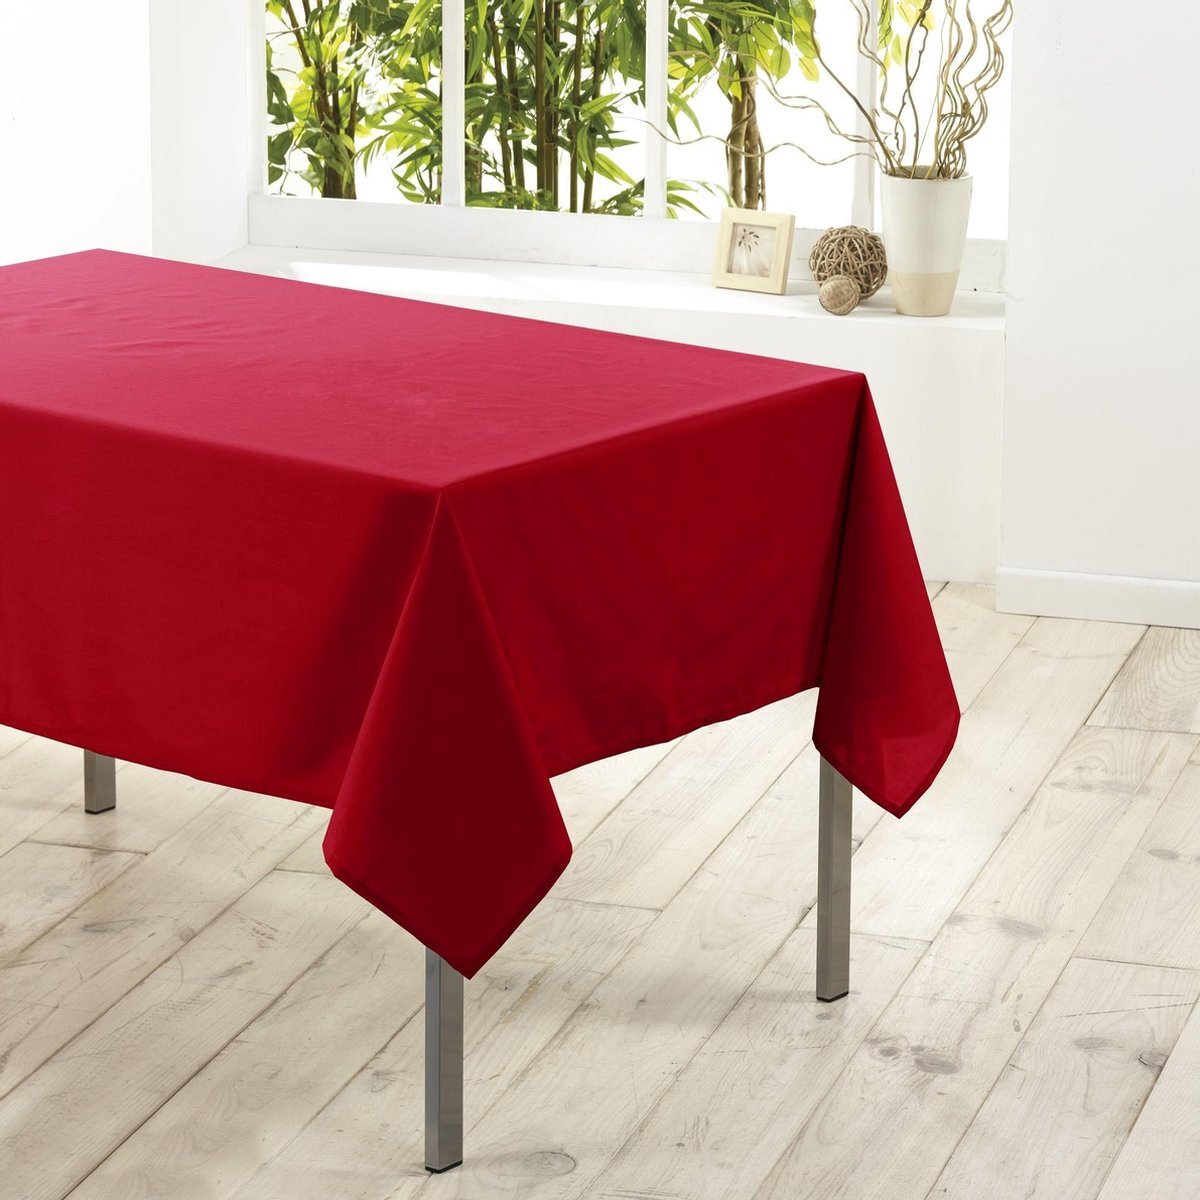 LingeDecor Rood tafelkleed van polyester met formaat 140 x 200 cm - Basic eettafel tafelkleden